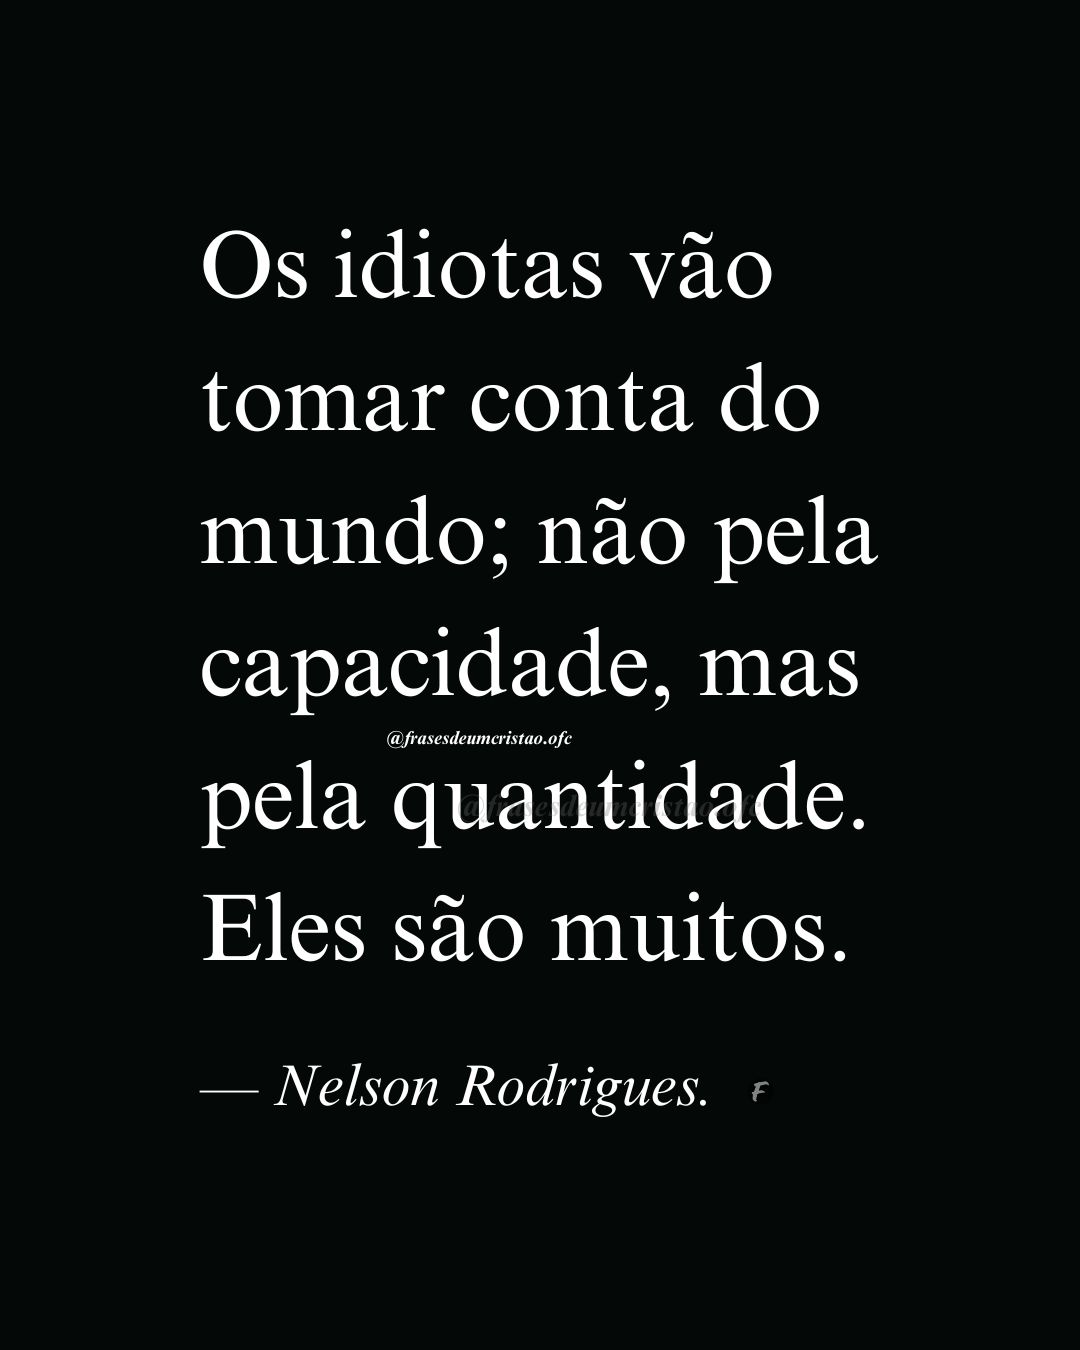 Os idiotas vão tomar conta do mundo; não pela capacidade, mas pela quantidade. Eles são muitos. — Nelson Rodrigues.